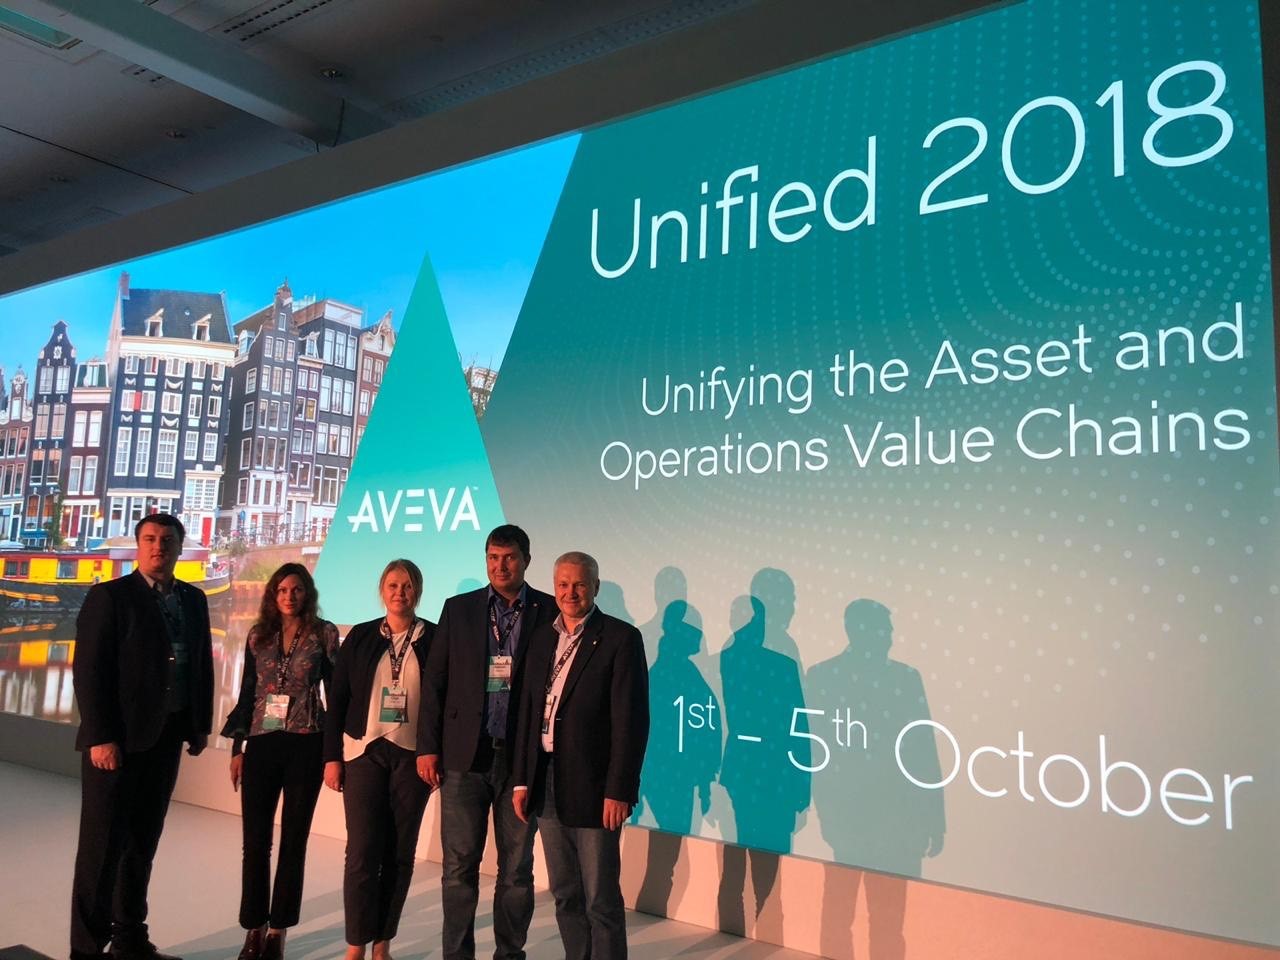 НИИК принял участие в международной конференции UNIFIED-2018, организованной компанией AVEVA